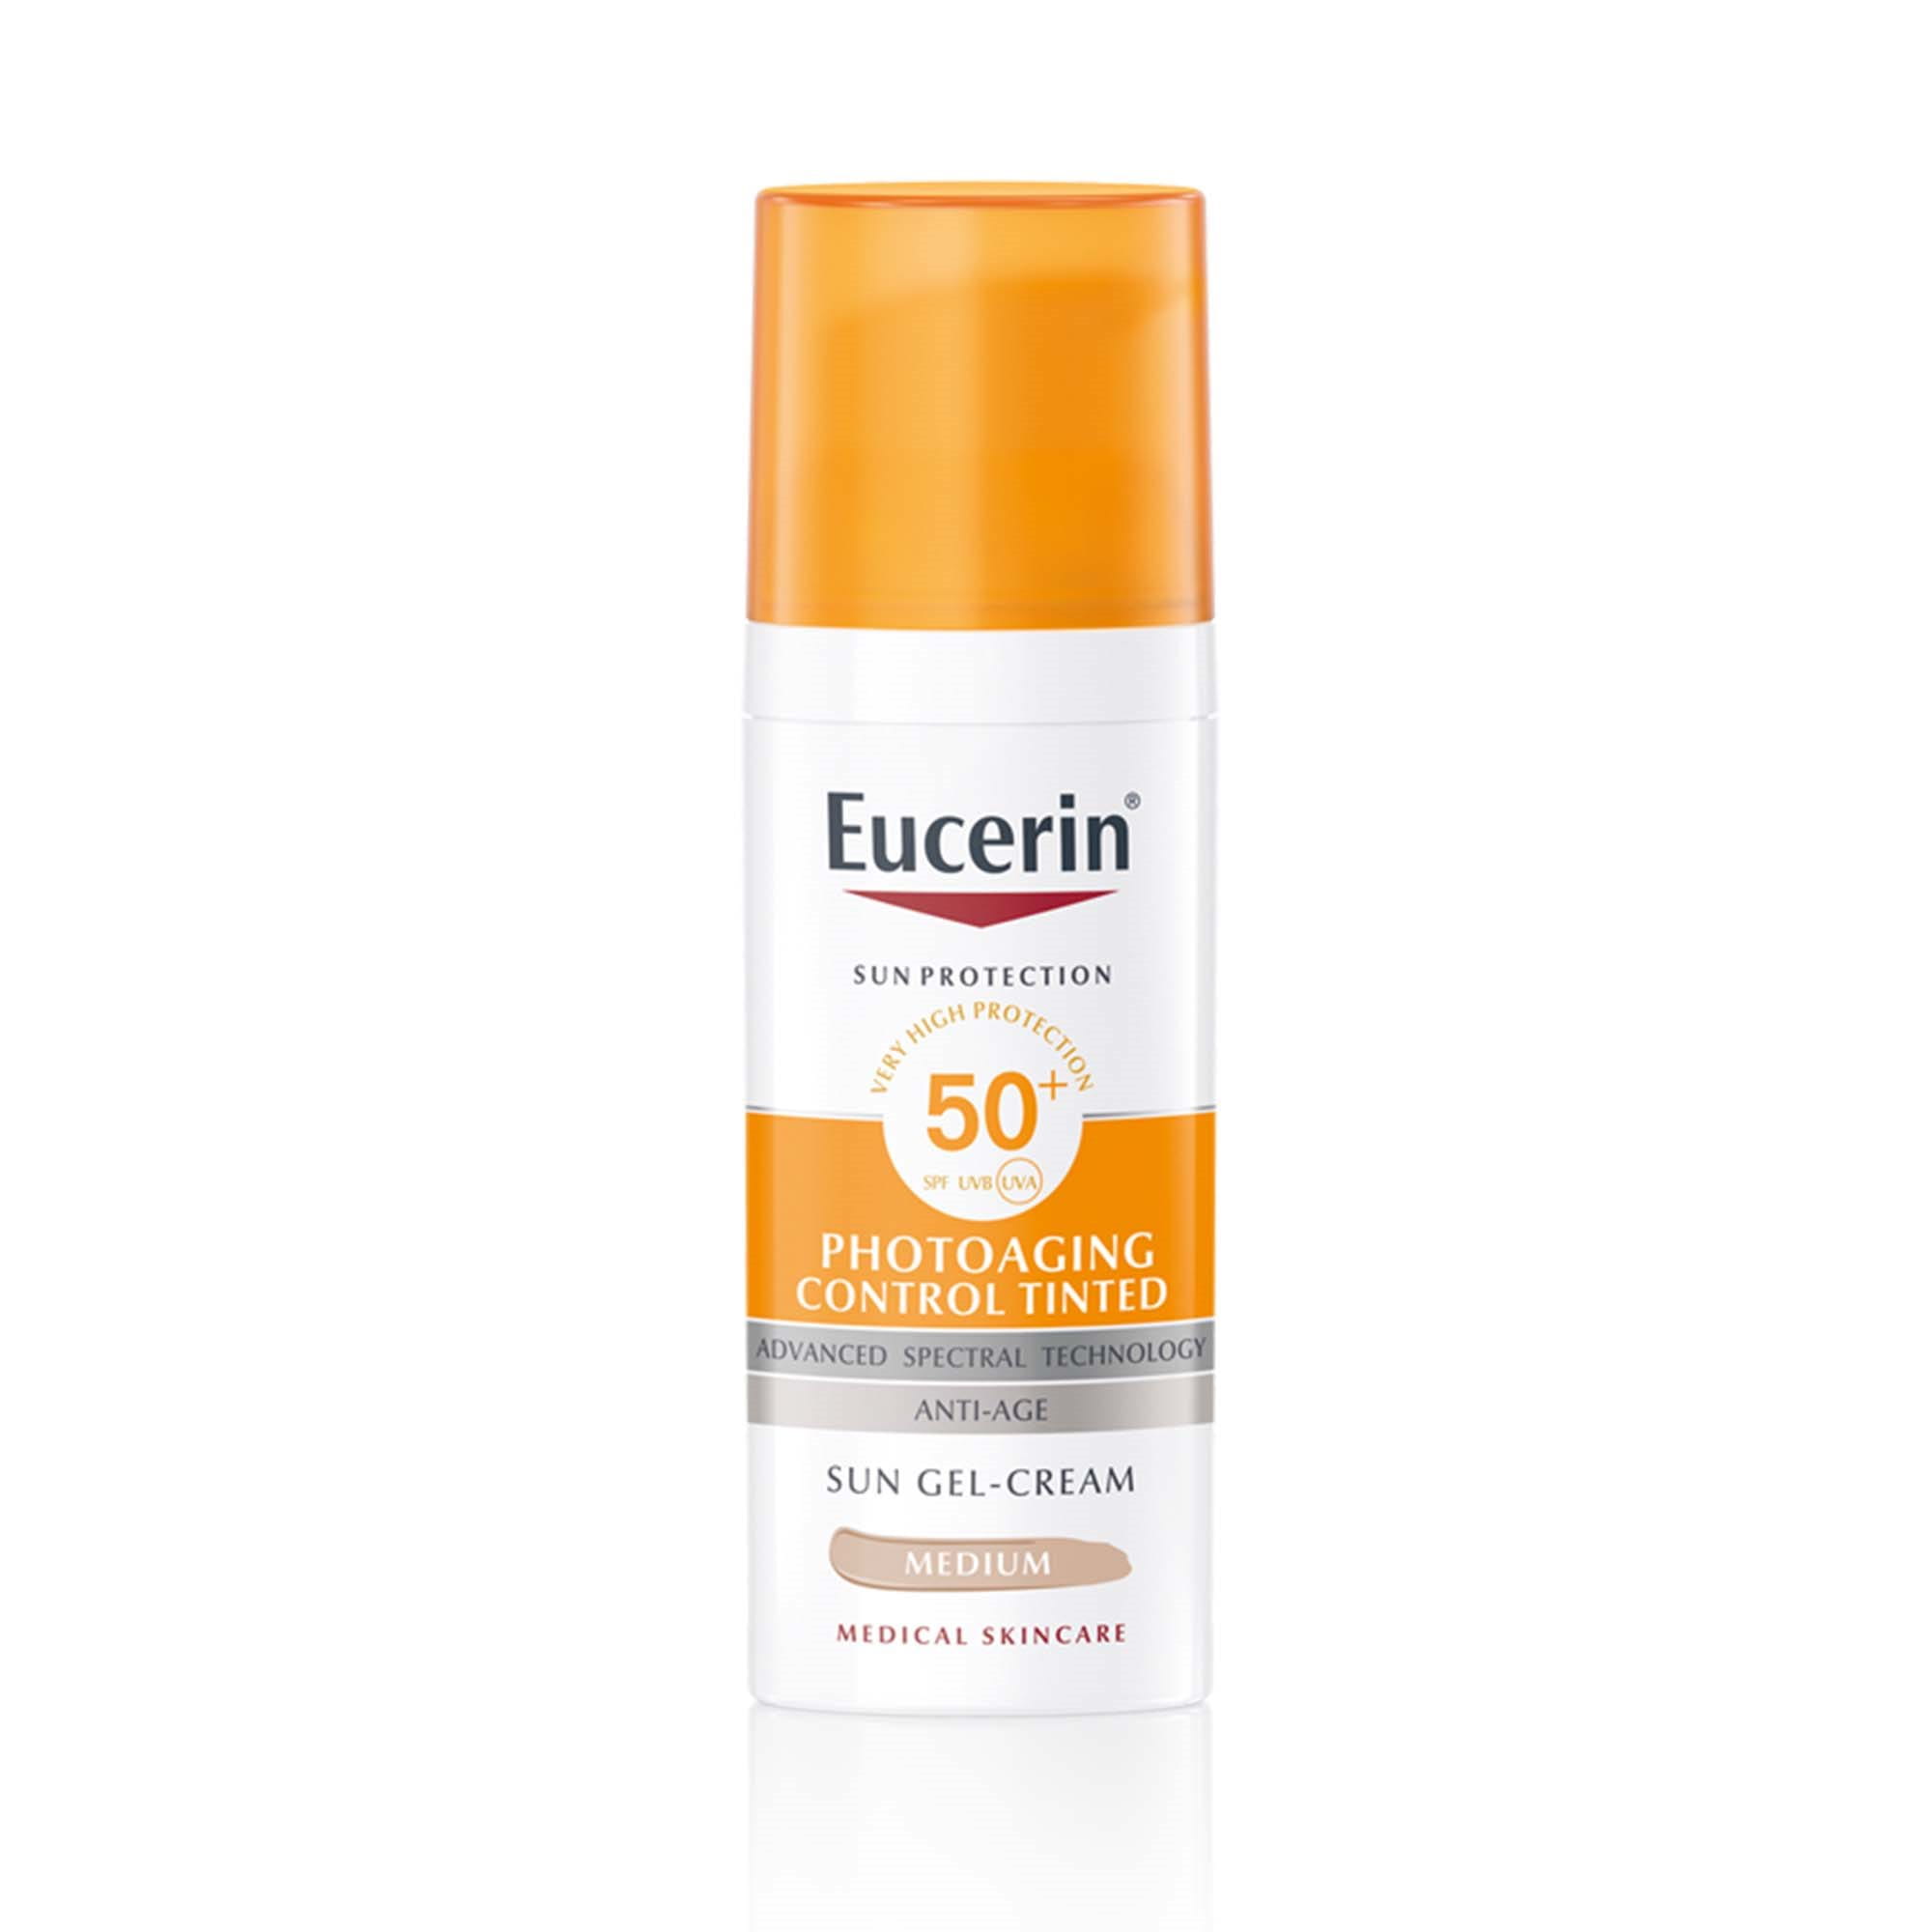 Eucerin Sun Protection Photoaging Control Tinted SPF 50+ Medium